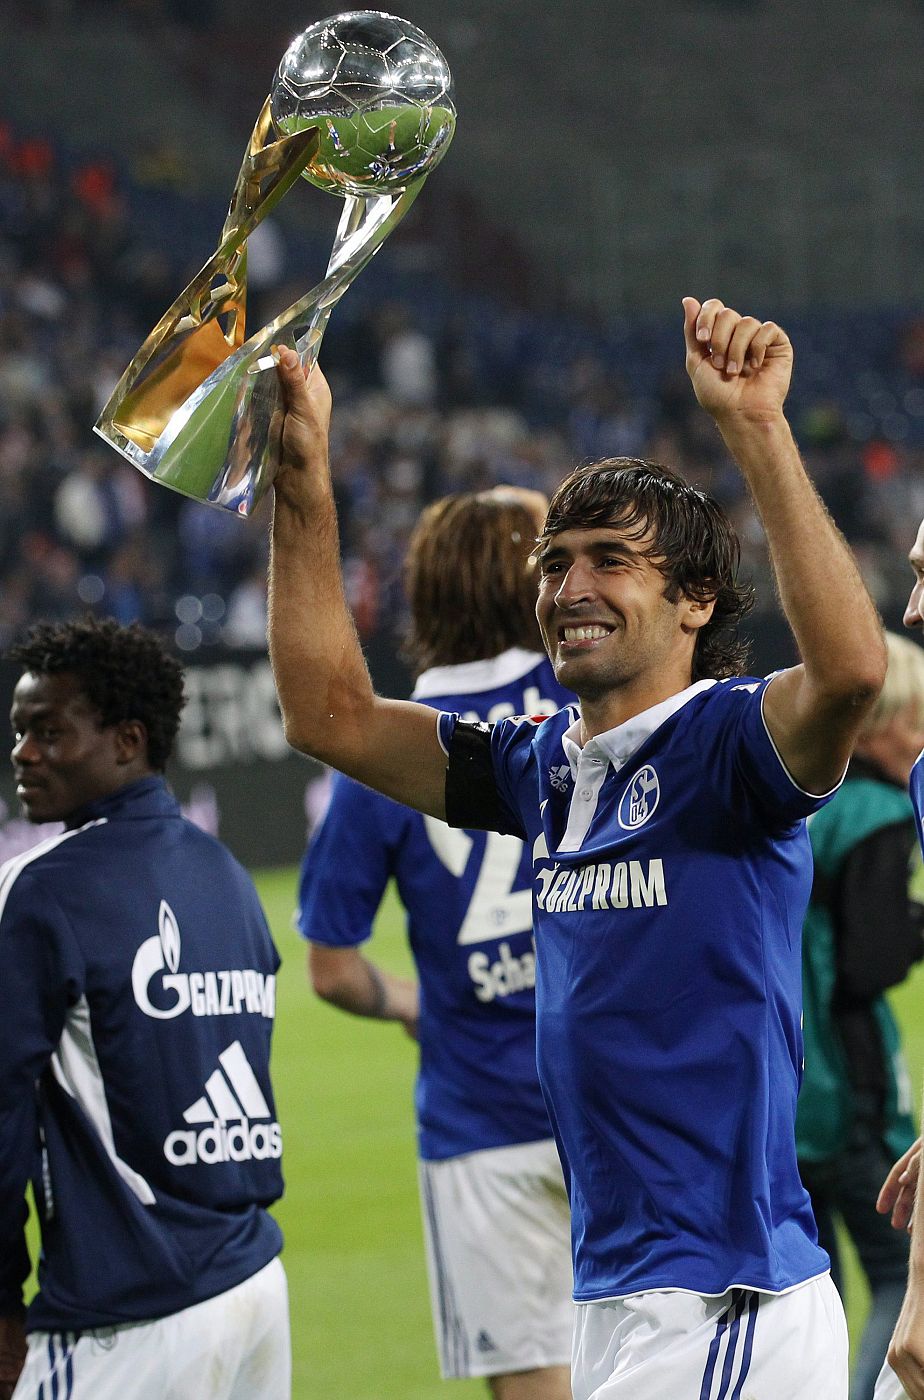 Raul celebra la victoria del Schalke 04 ante el Borussia Dortmund durante un partido de la Supercopa alemana